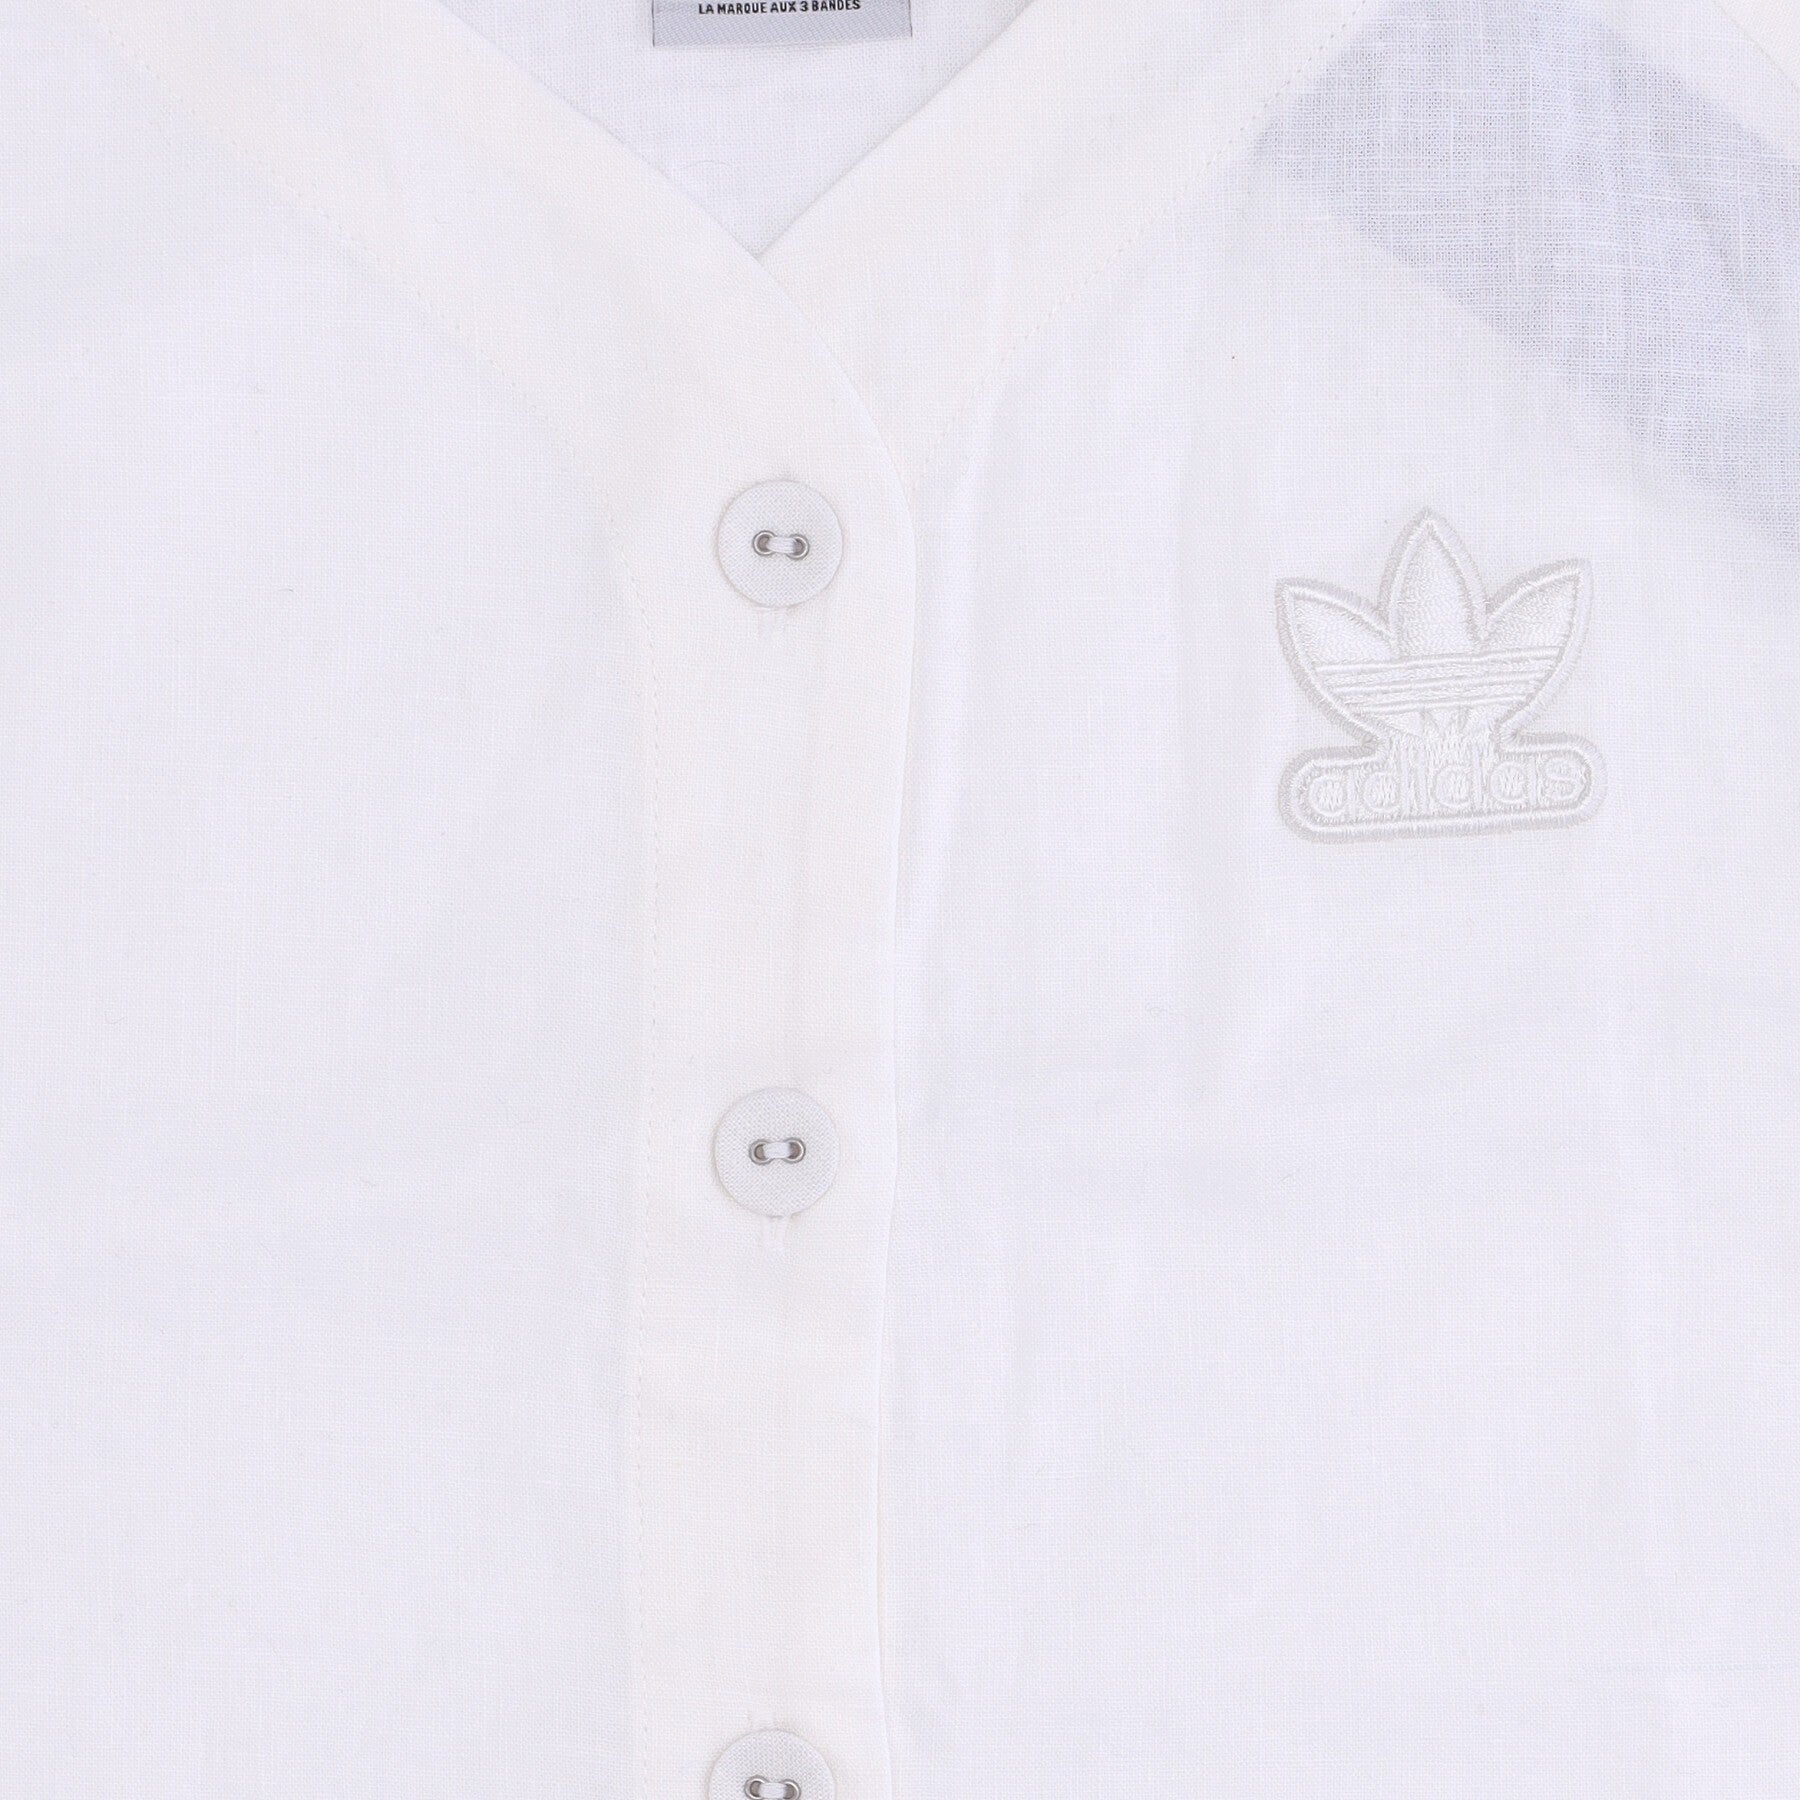 Geknöpfte Jacke für Damen, kurz geschnittenes Baseball-T-Shirt aus Leinen, nicht gefärbt, weiß